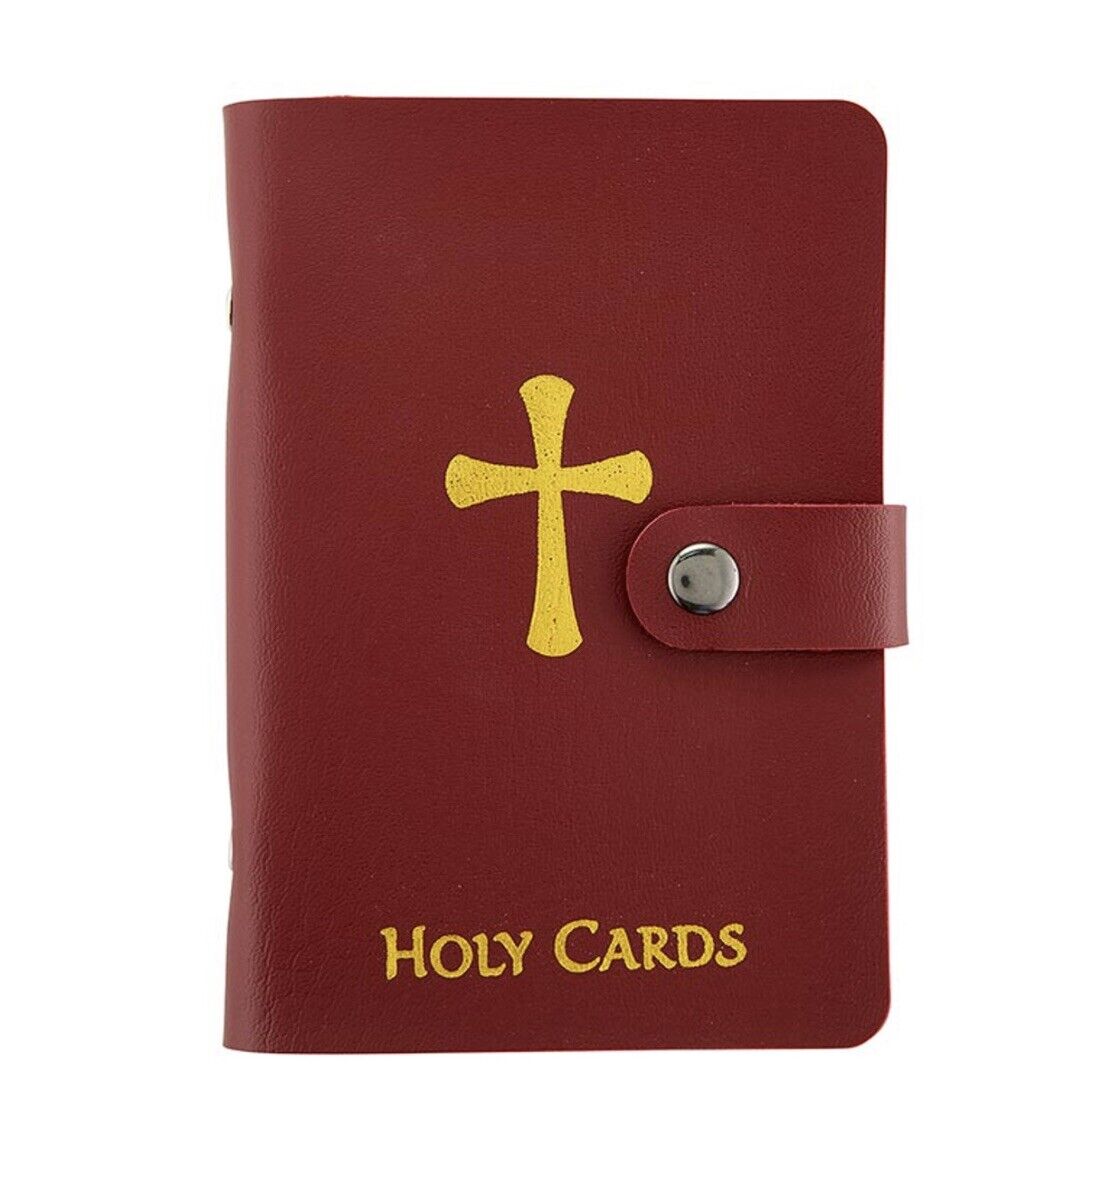 Maroon Leatherette Holy Prayer Card Holder Religious Catholic Album - Fits 40